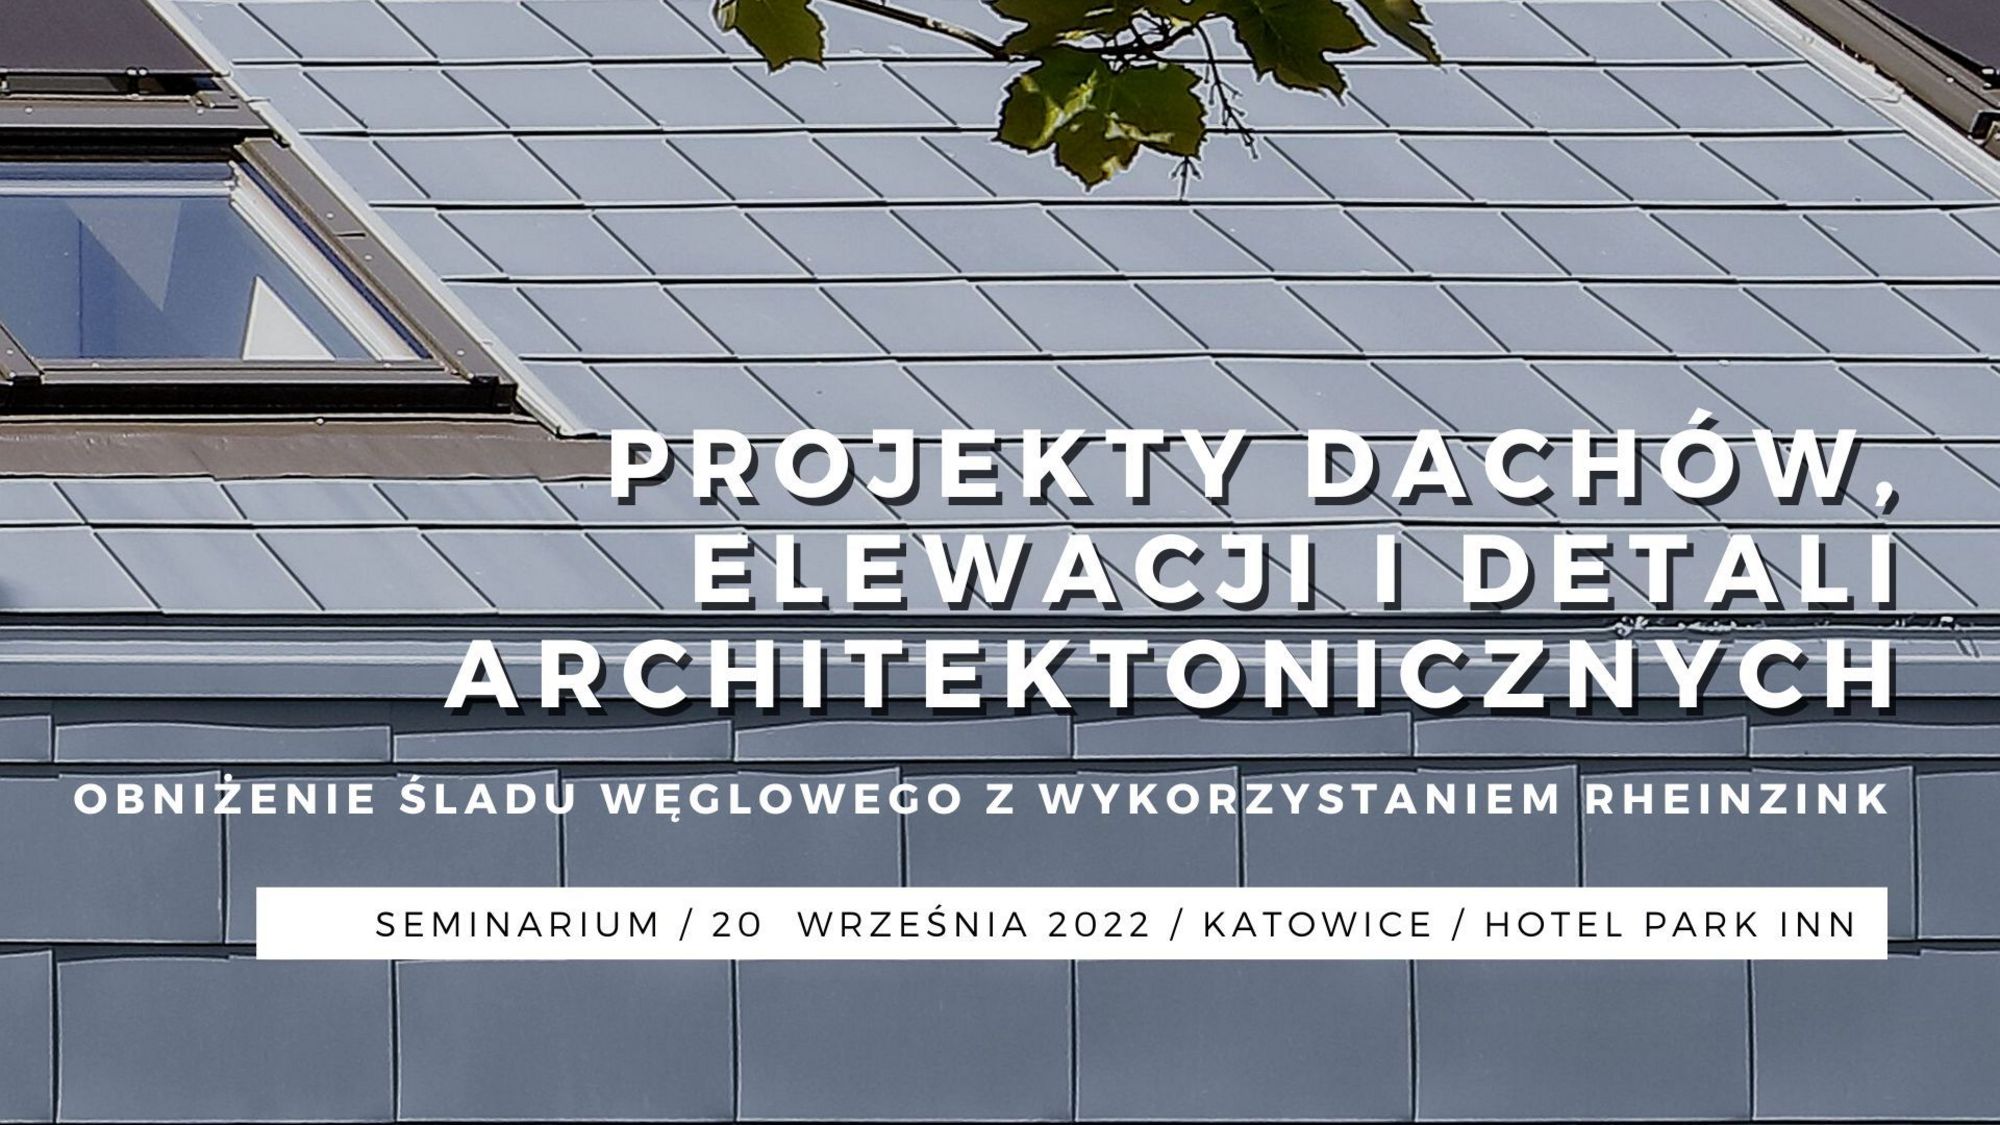 Projekty dachów, elewacji i detali architektonicznych - seminarium w Katowicach